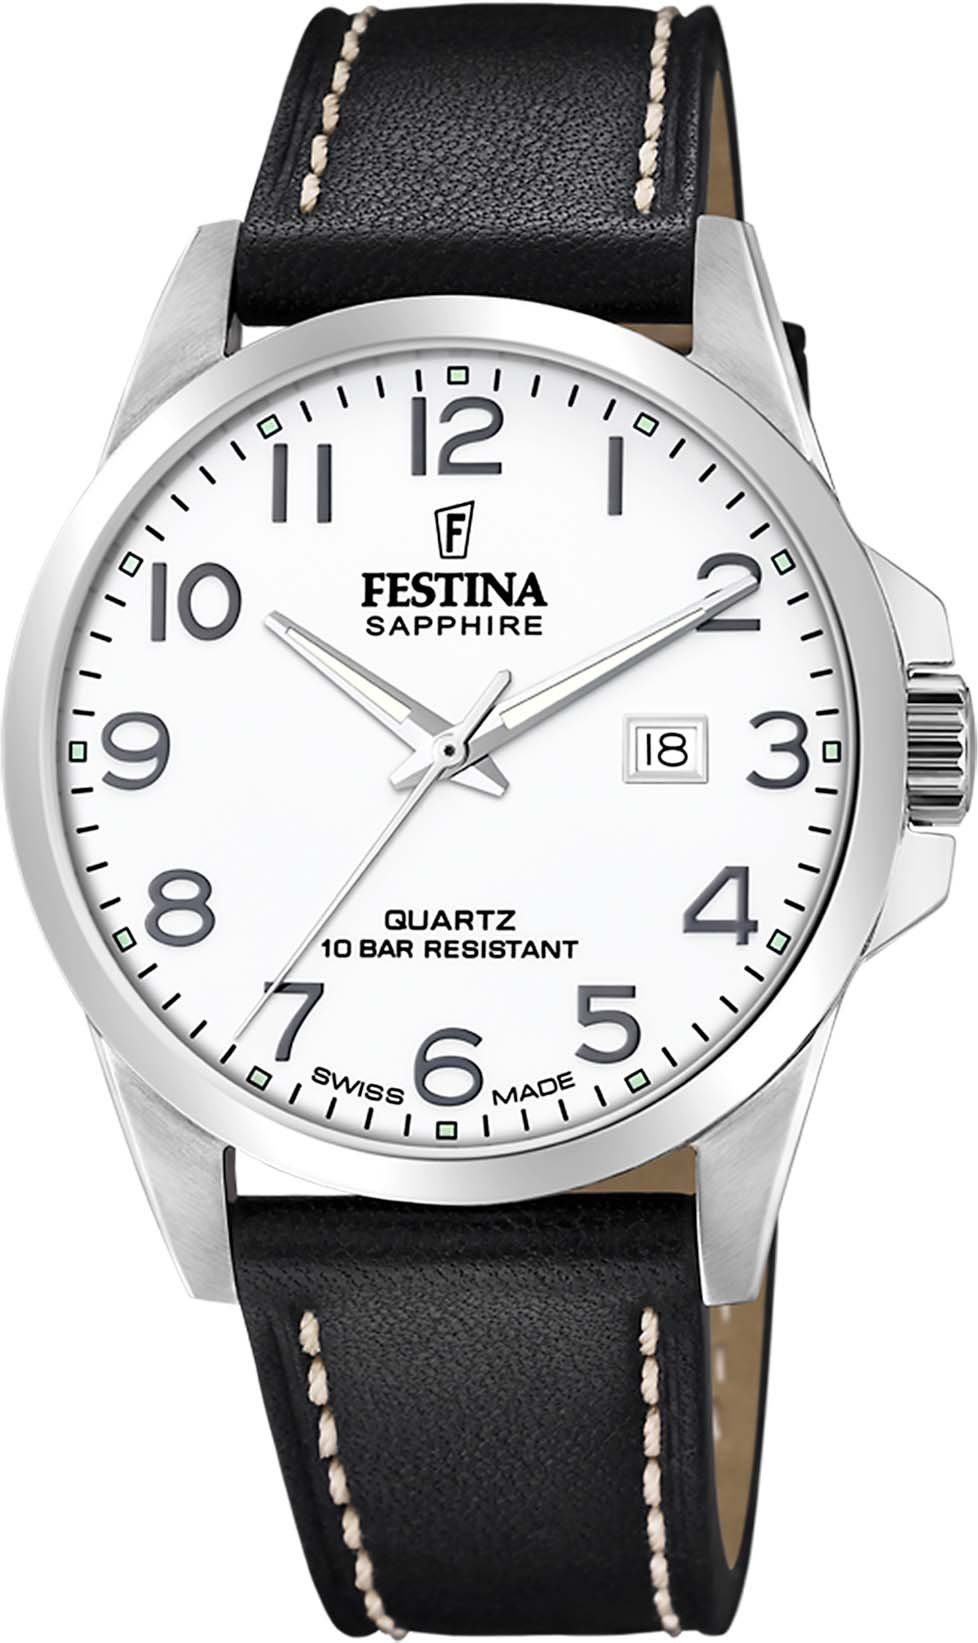 Uhr Swiss Schweizer F20025/1 Made, Festina